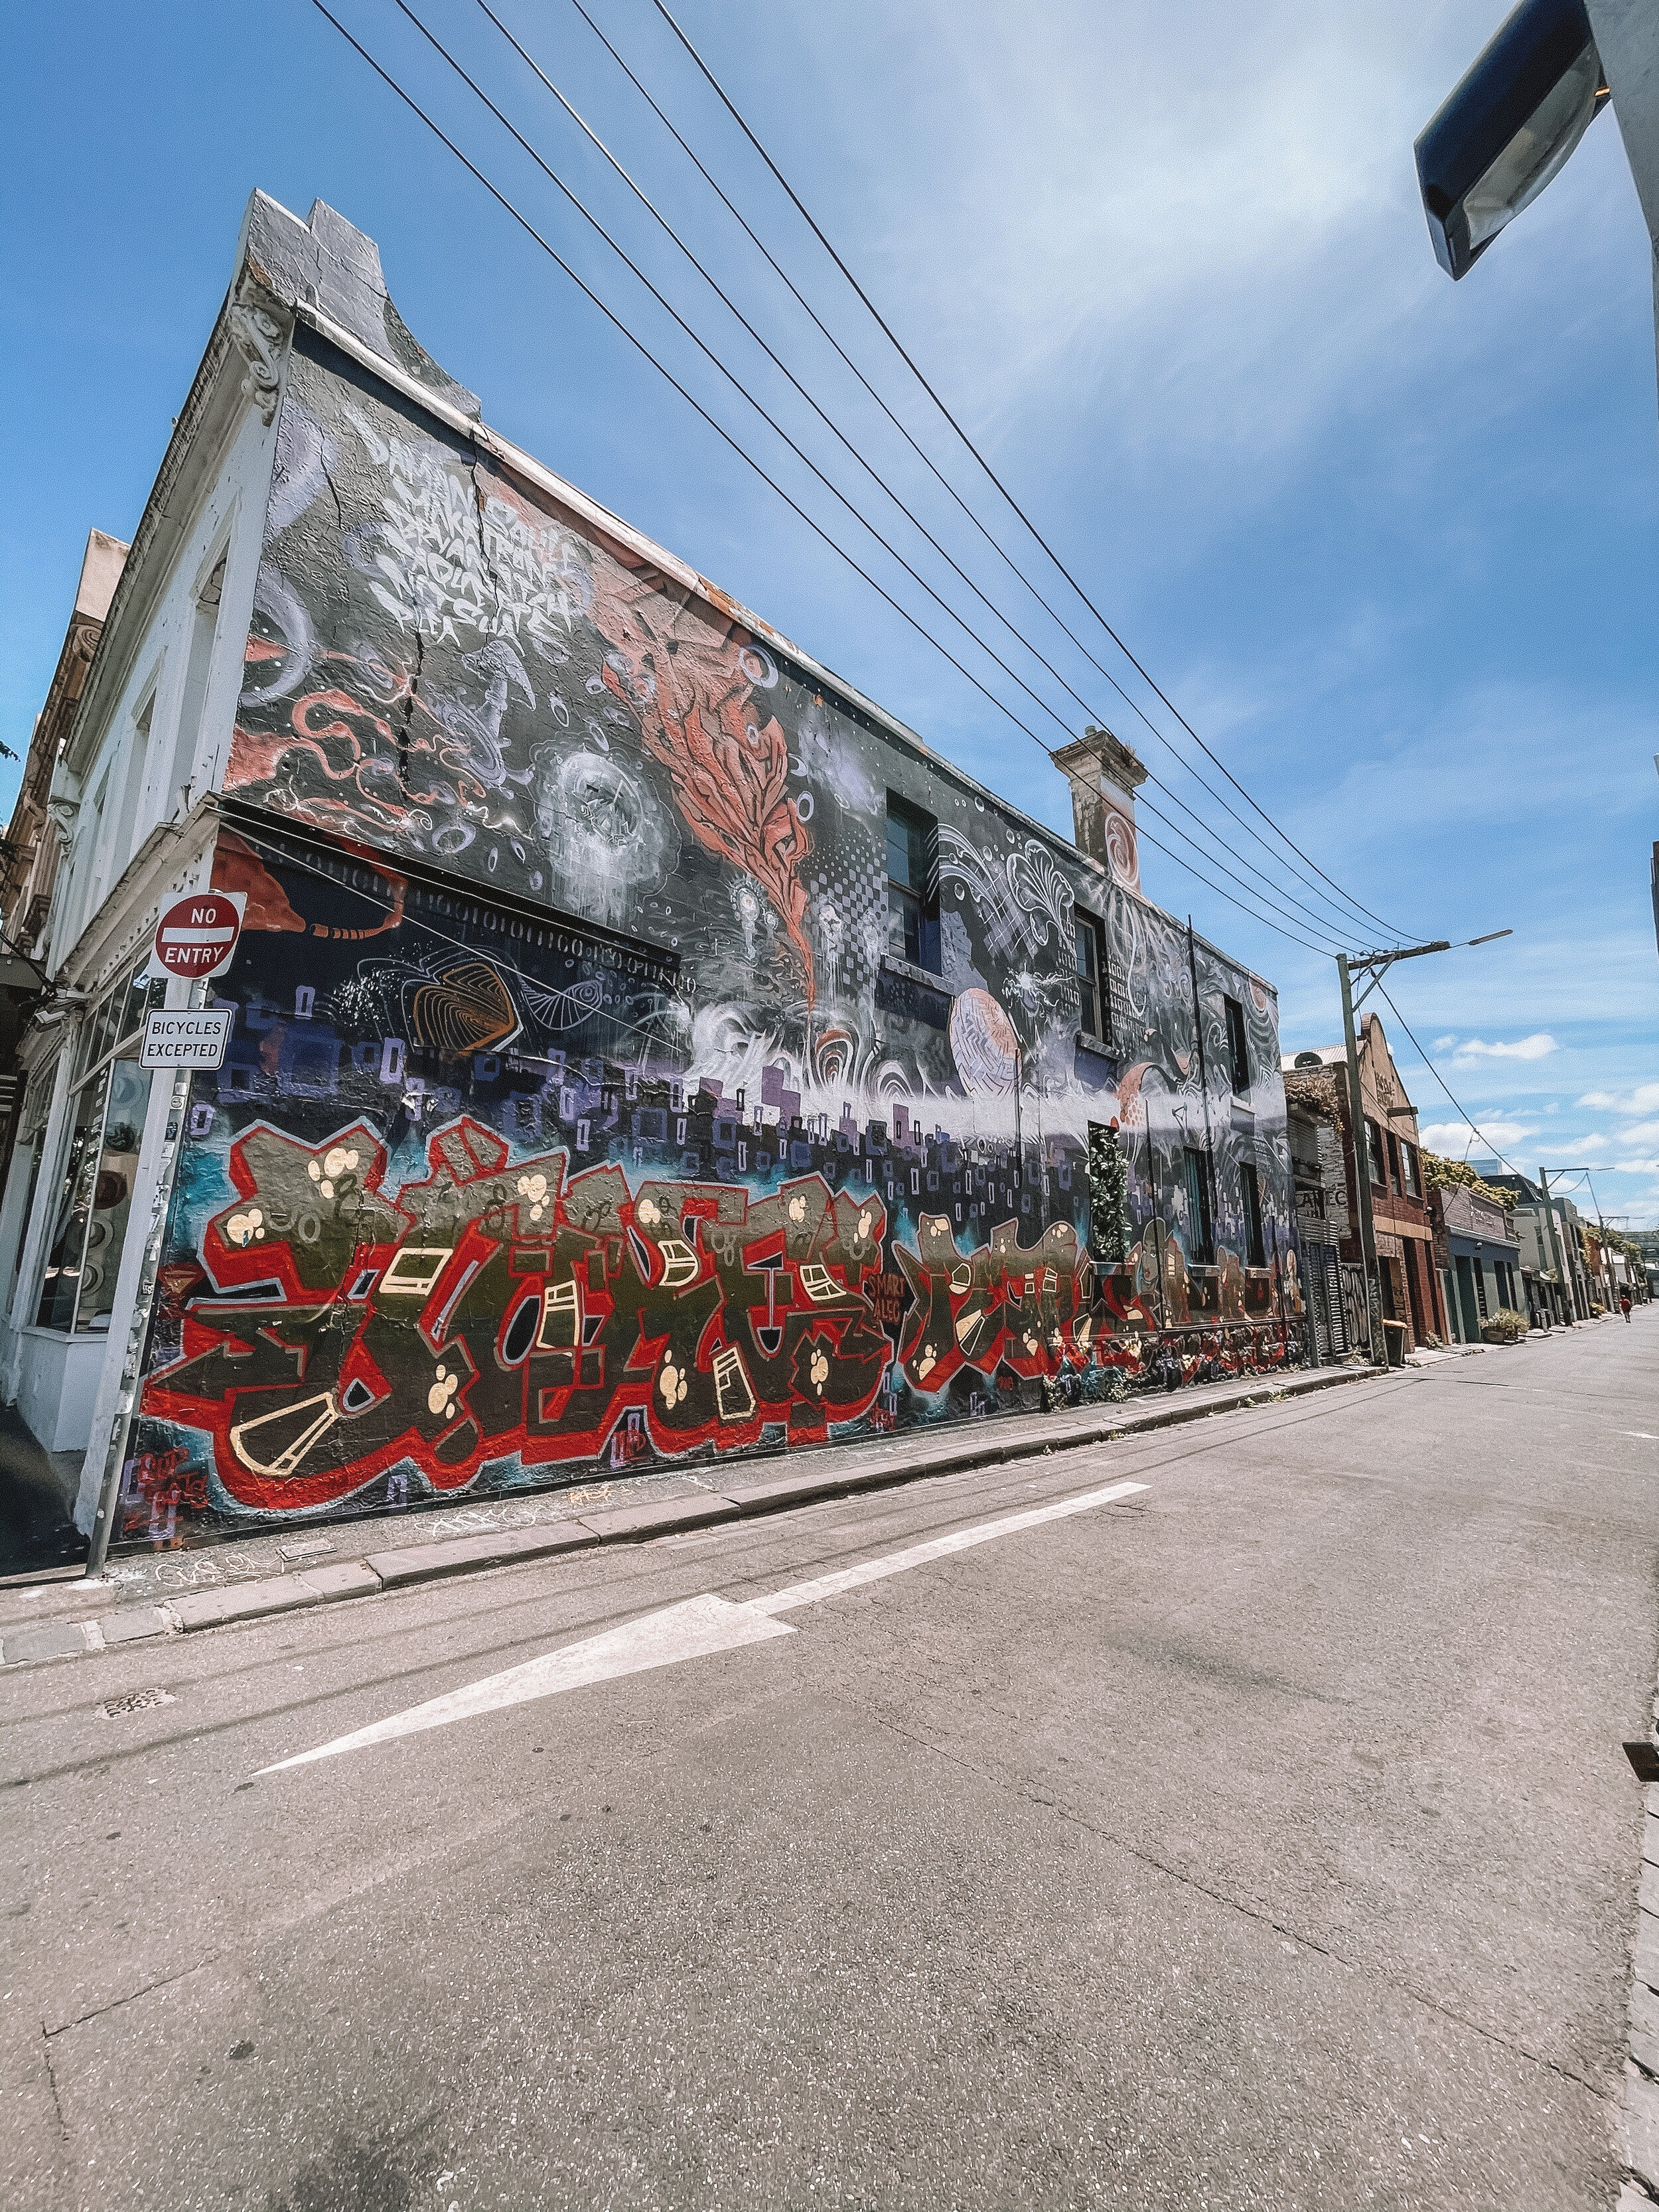 More murals - Melbourne - Victoria - Australia